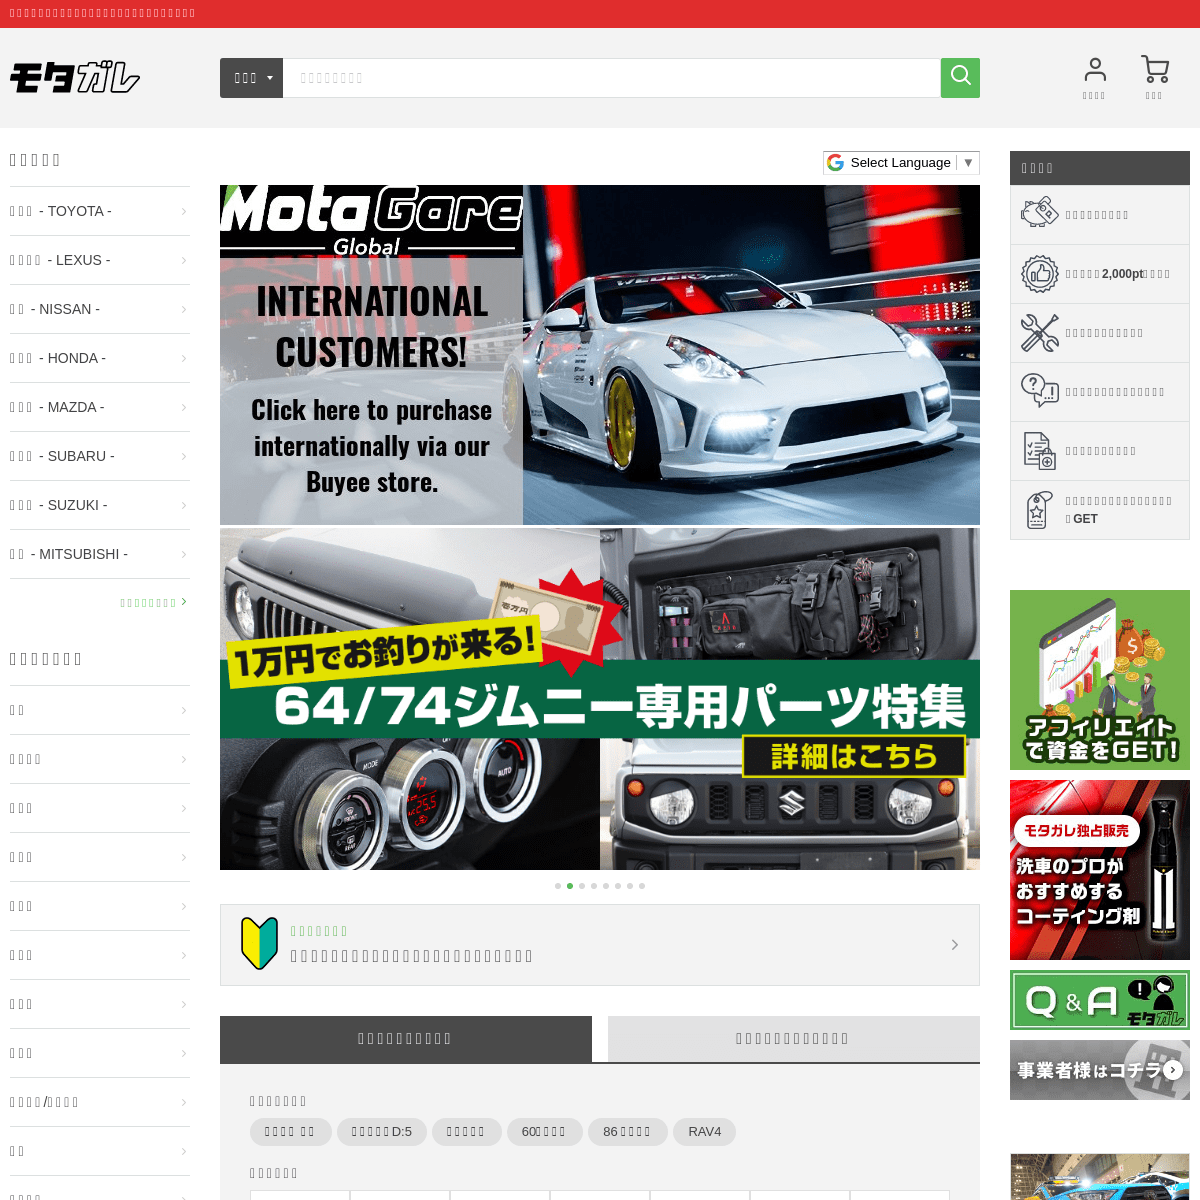 A complete backup of motorz-garage.com